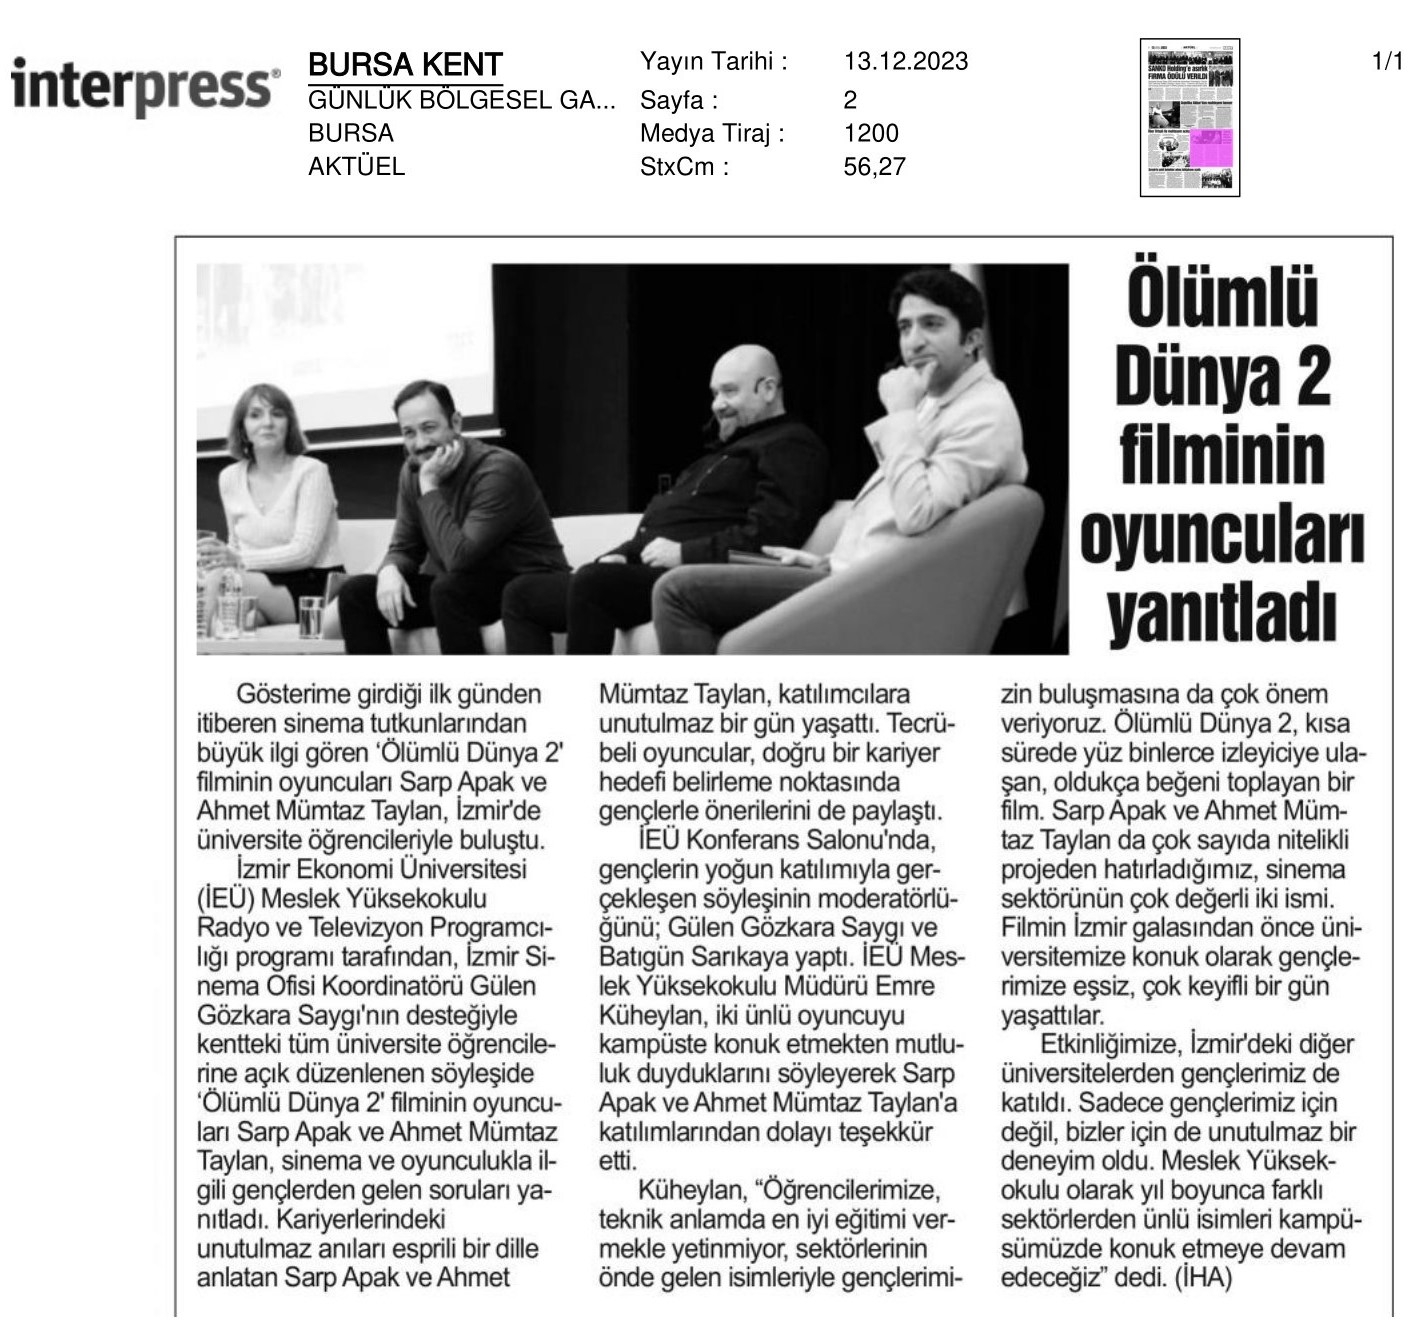 Usta Oyuncular ‘İzmir Ekonomi’de Buluştu